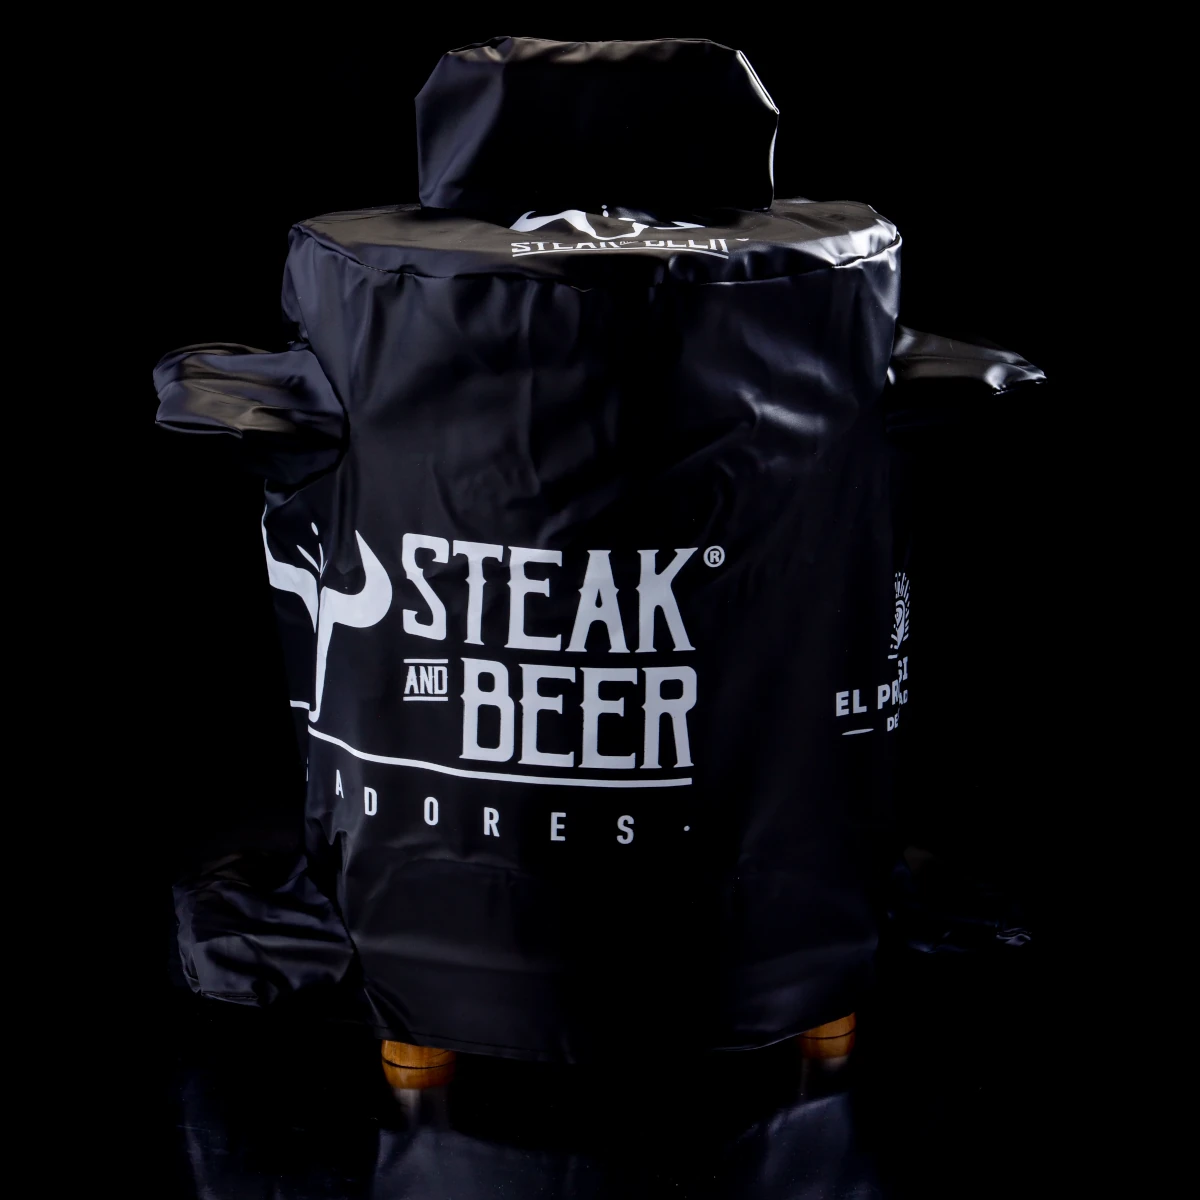 Imagen del forro para barril mediano de Steak and Beer España